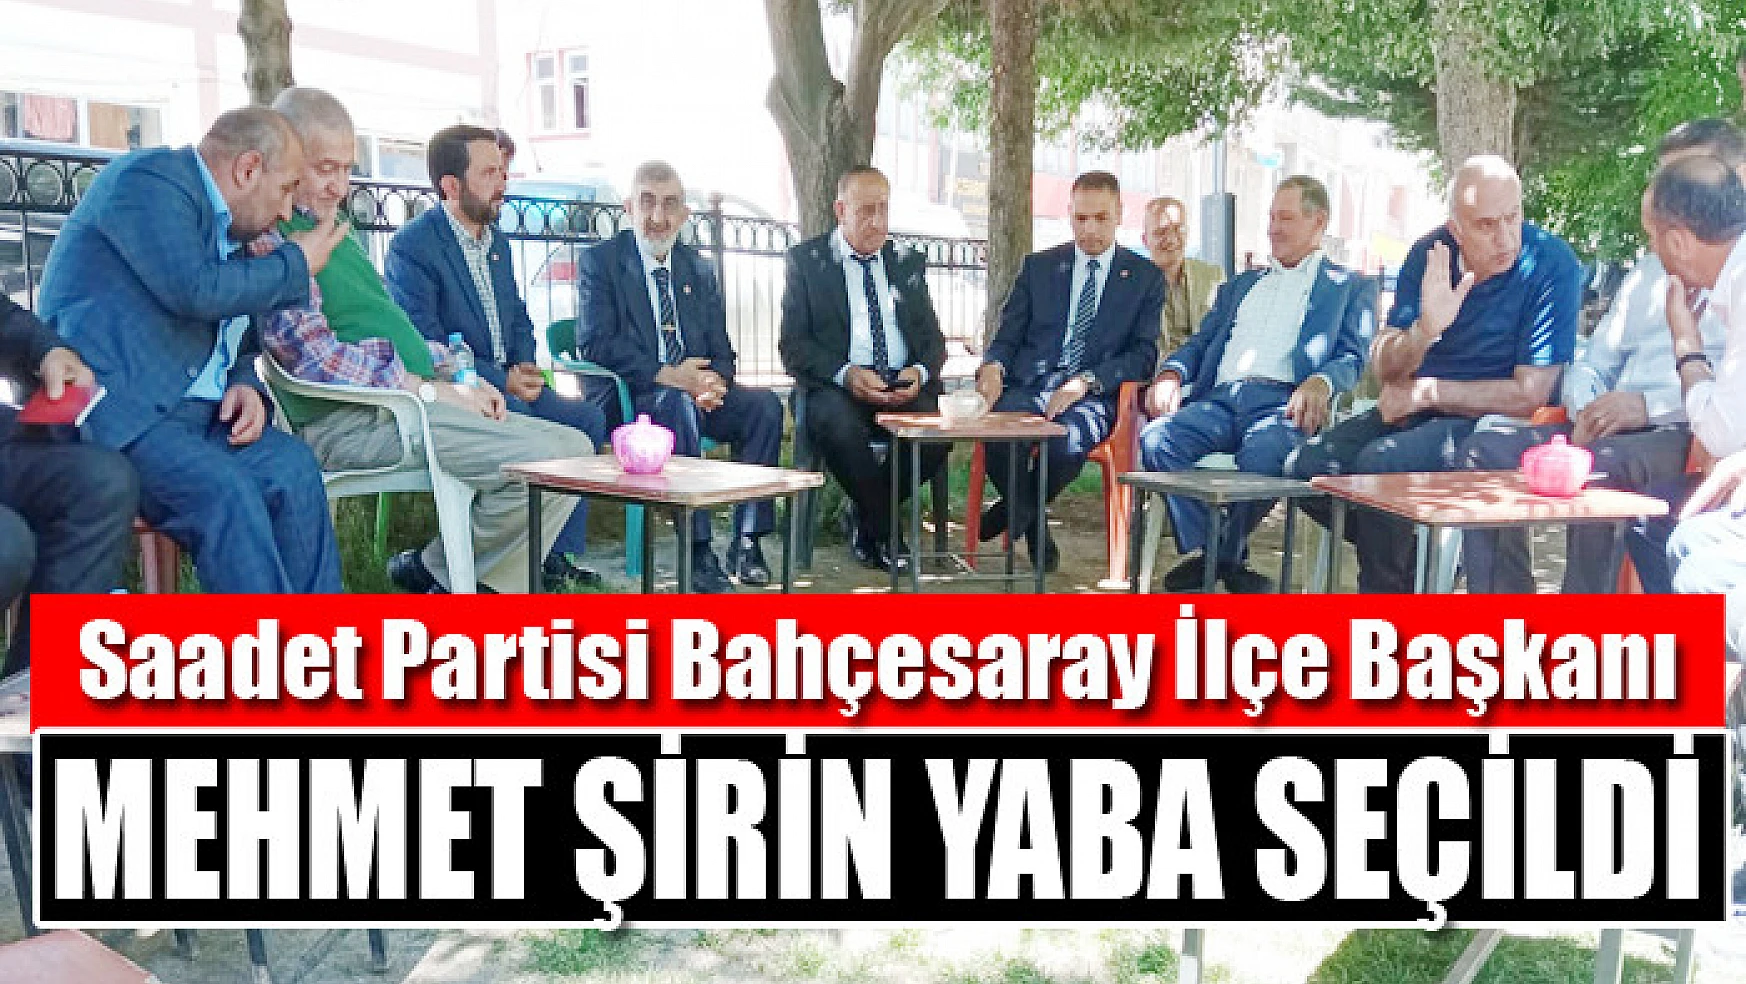 Saadet Partisi Bahçesaray İlçe Başkanlığına Mehmet Şirin Yaba seçildi